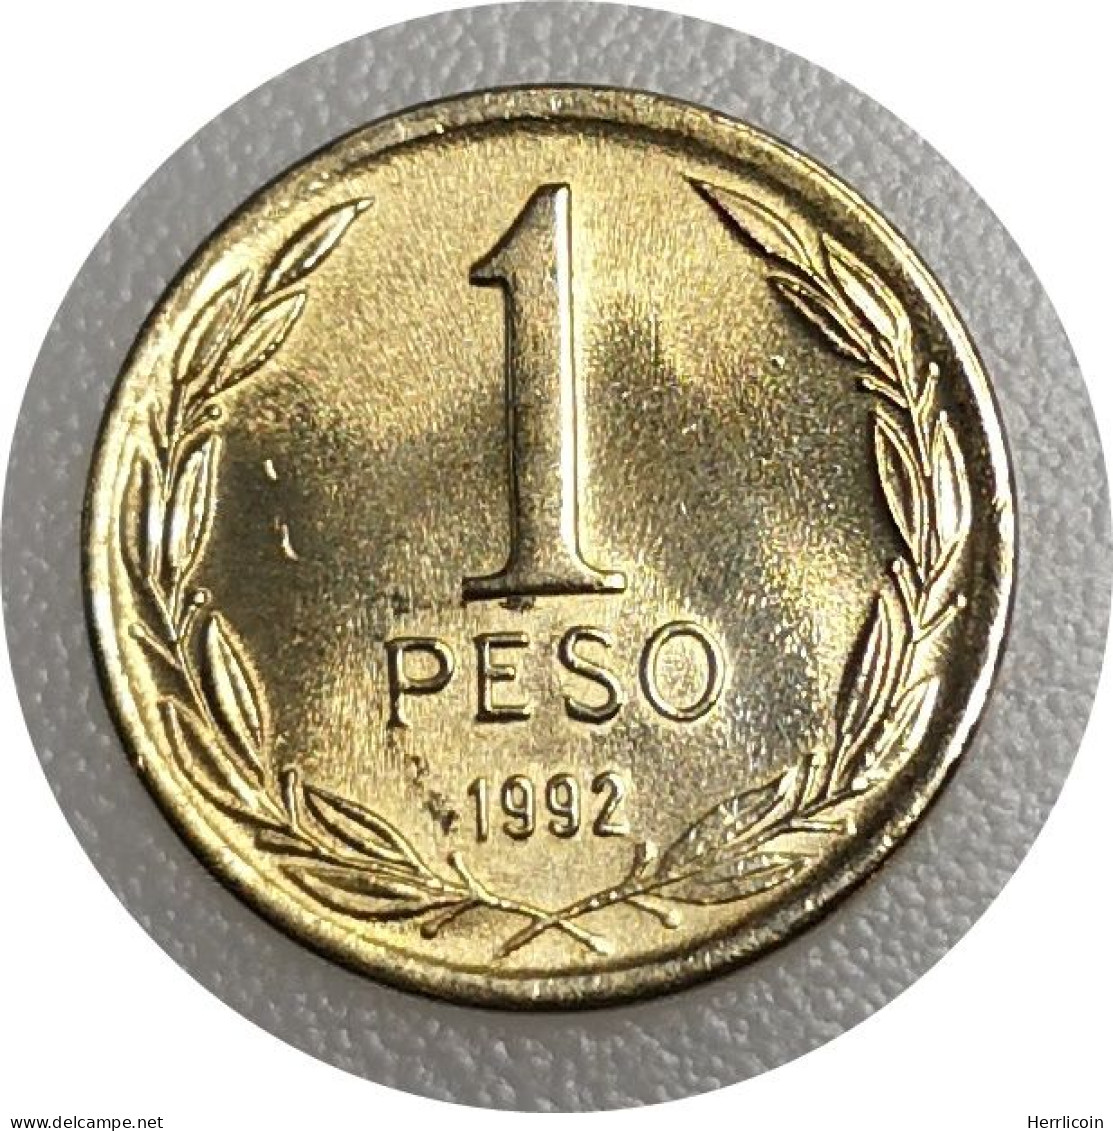 Monnaie Chili - 1992 - 1 Peso - Chili